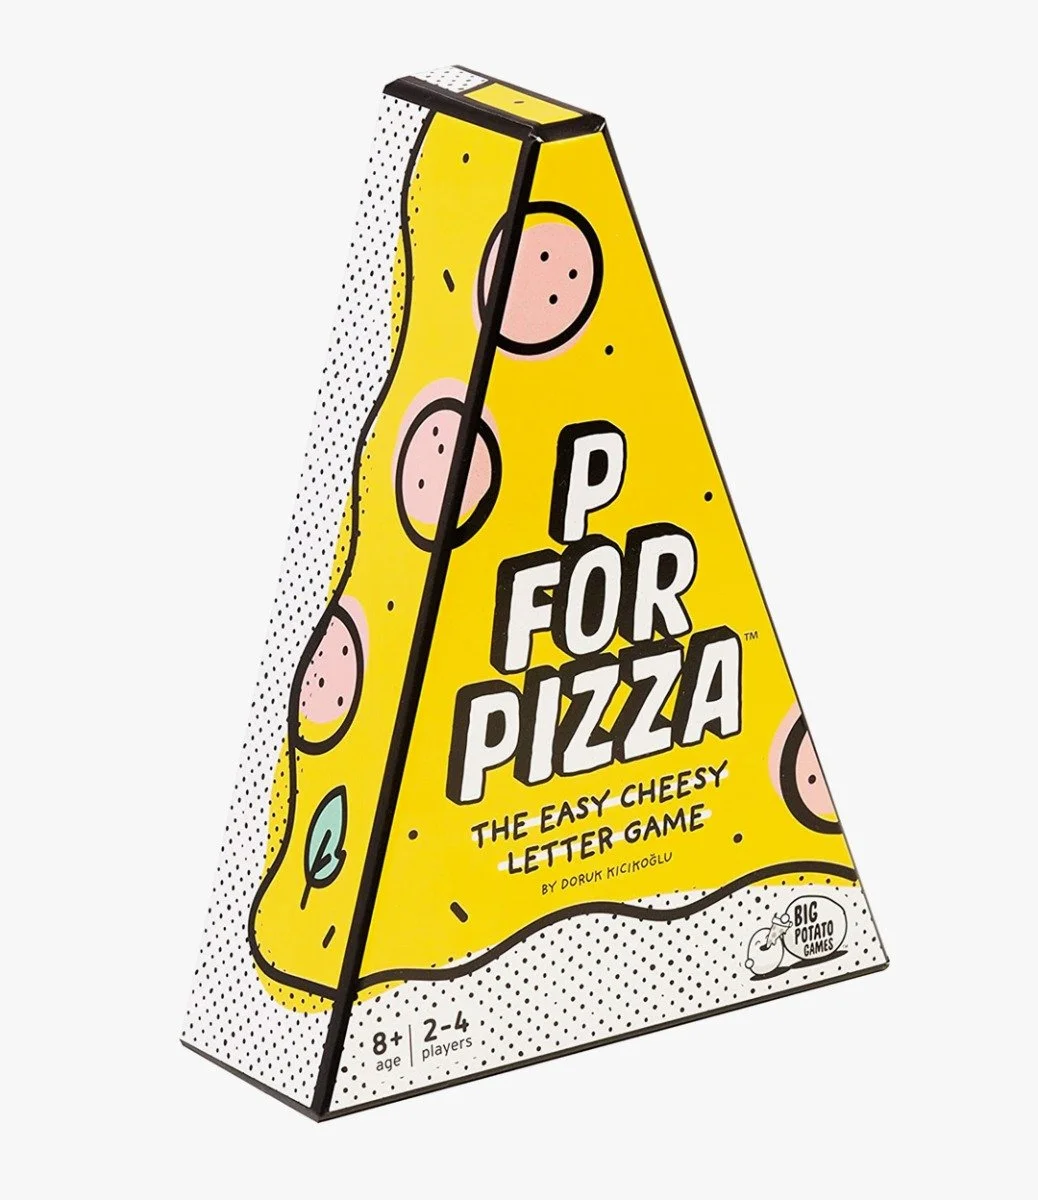 لعبة بي فور بيتزا من بيج بوتيتو جيمز 